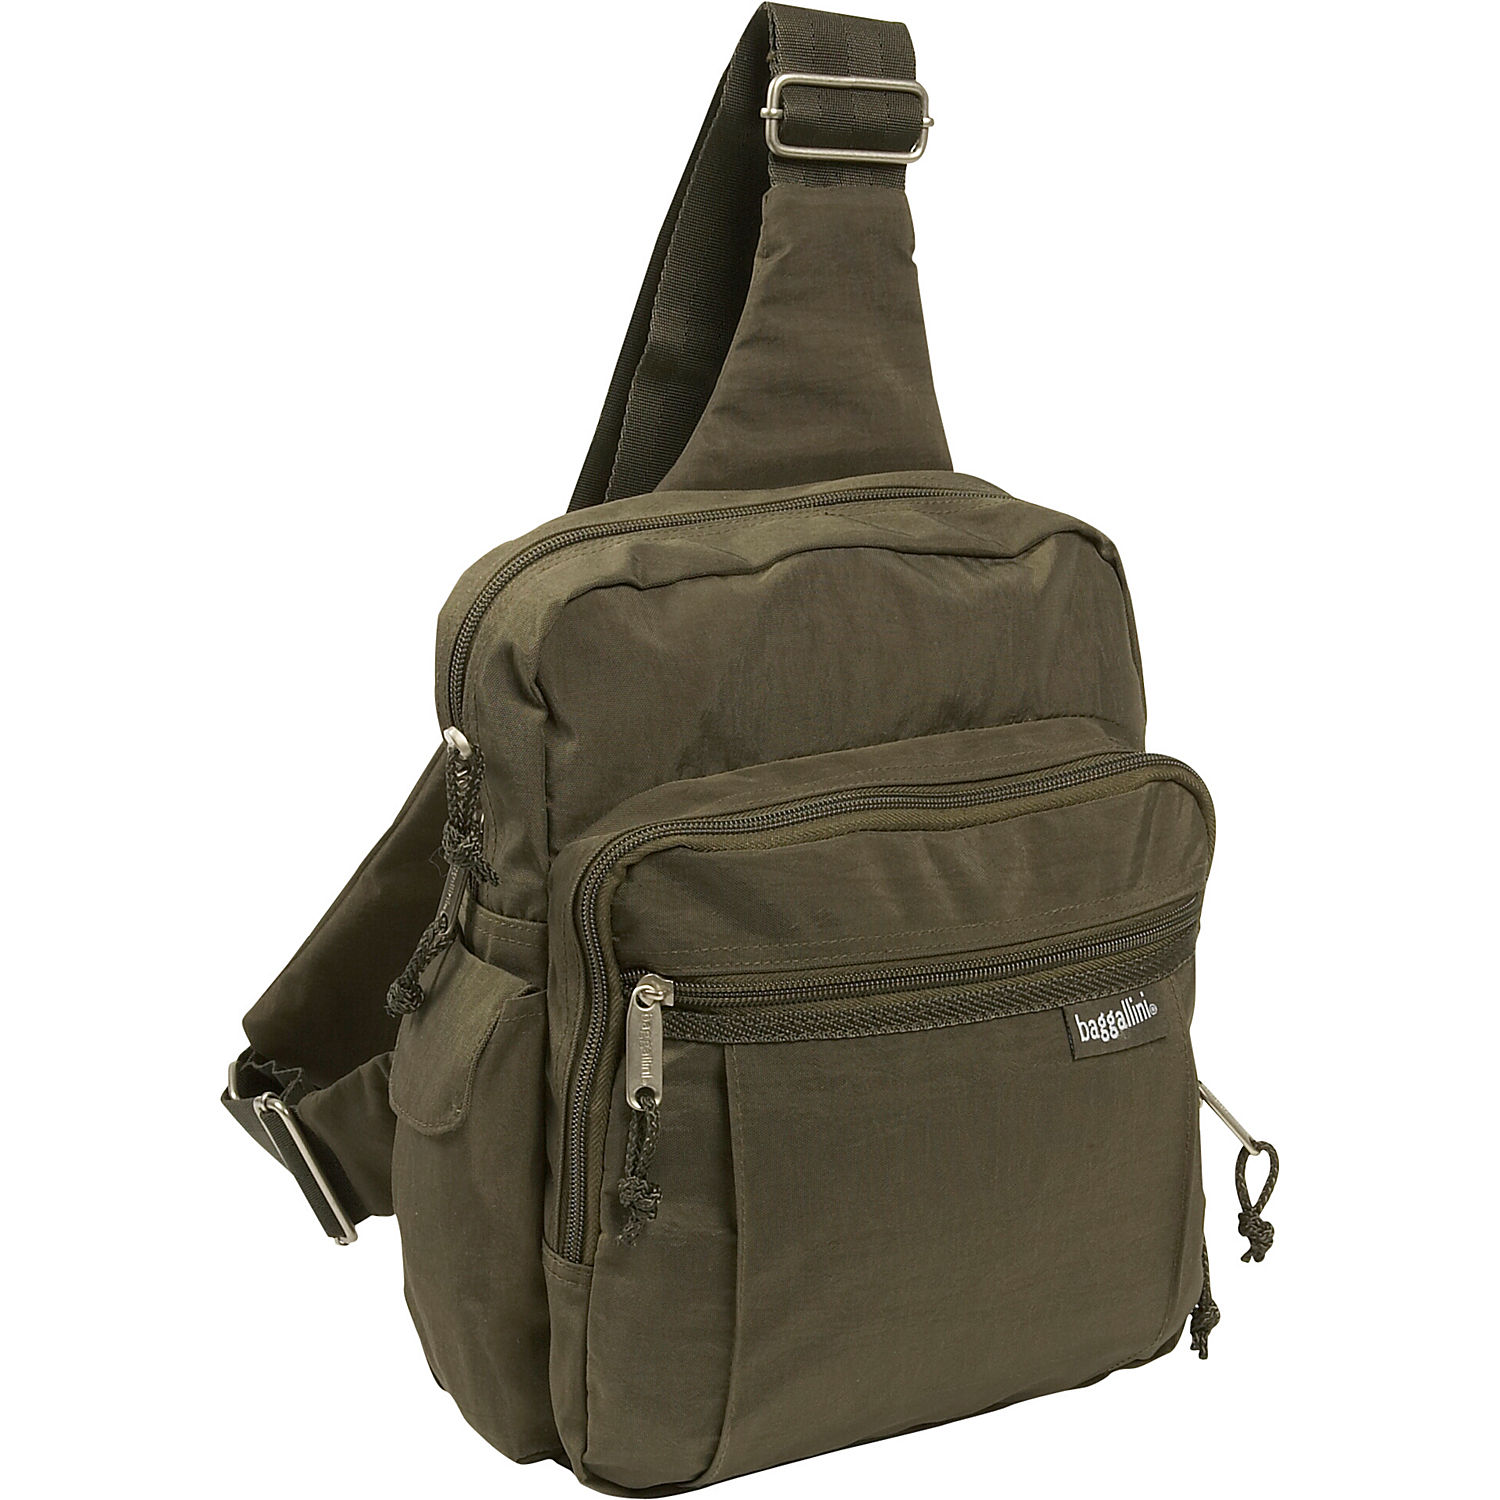 Baggallini Messenger Sling Bag. Baggallini Sling Messenger Backpack Shoulder Bag (Black/Sand).